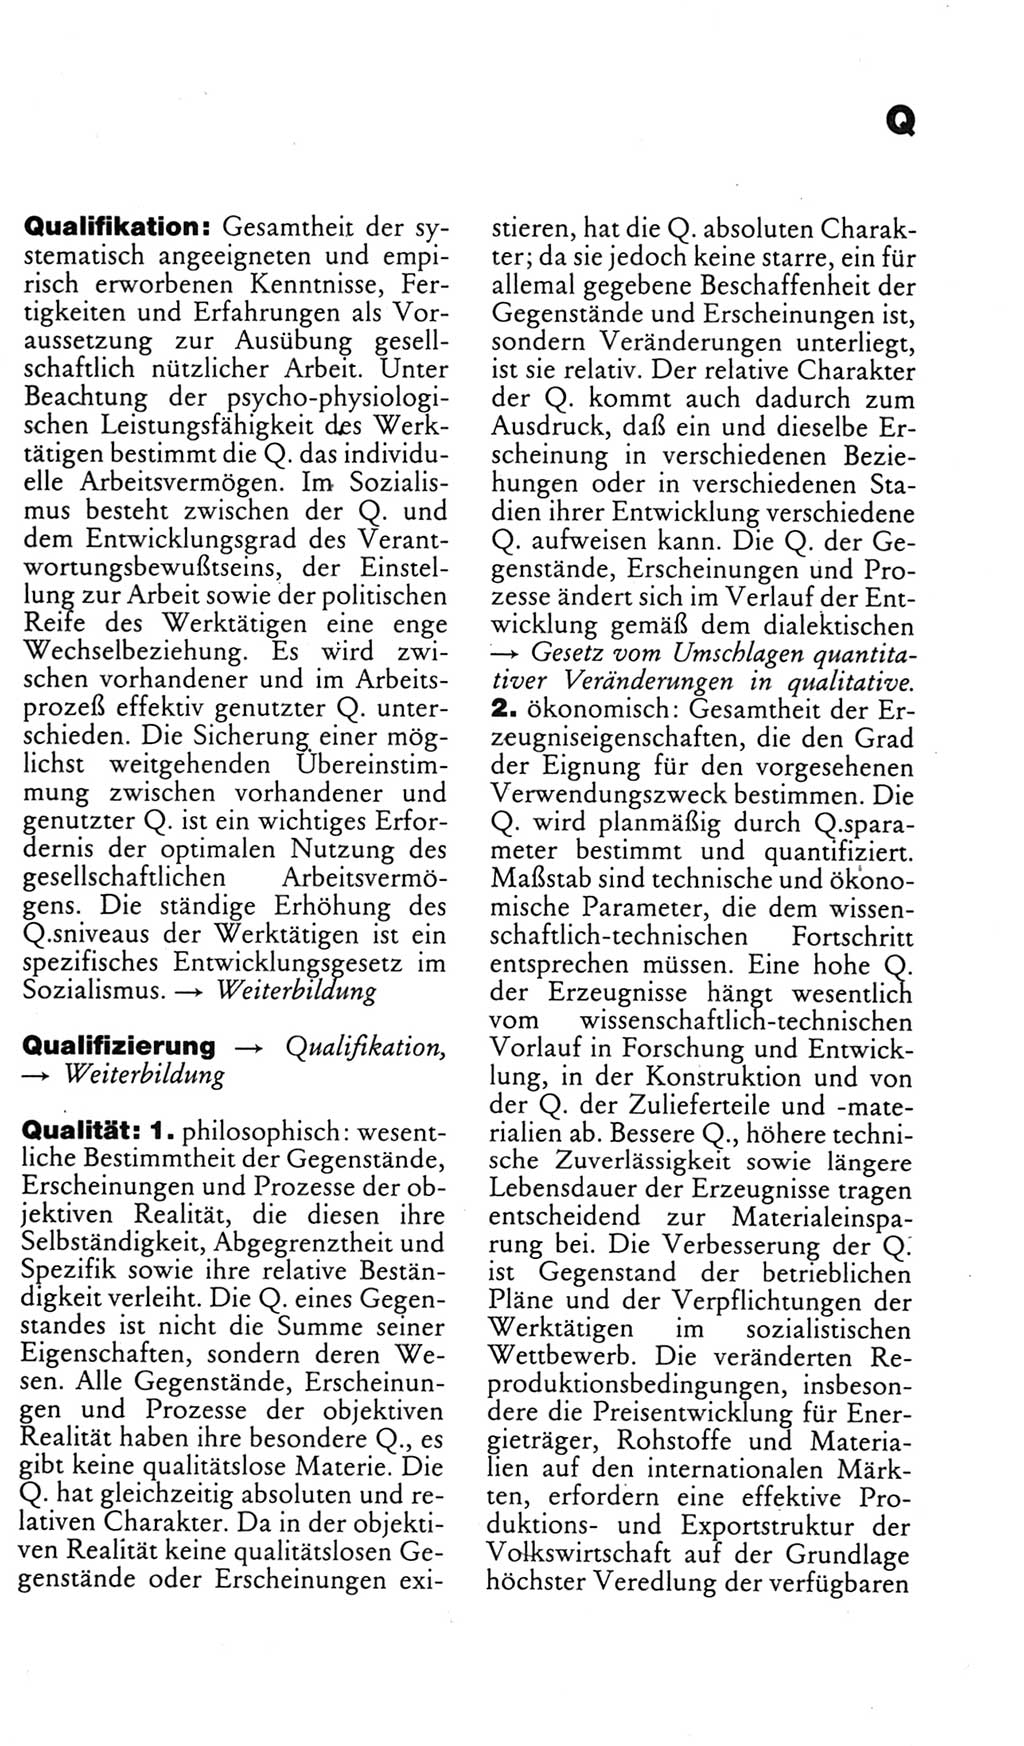 Kleines politisches Wörterbuch [Deutsche Demokratische Republik (DDR)] 1985, Seite 781 (Kl. pol. Wb. DDR 1985, S. 781)